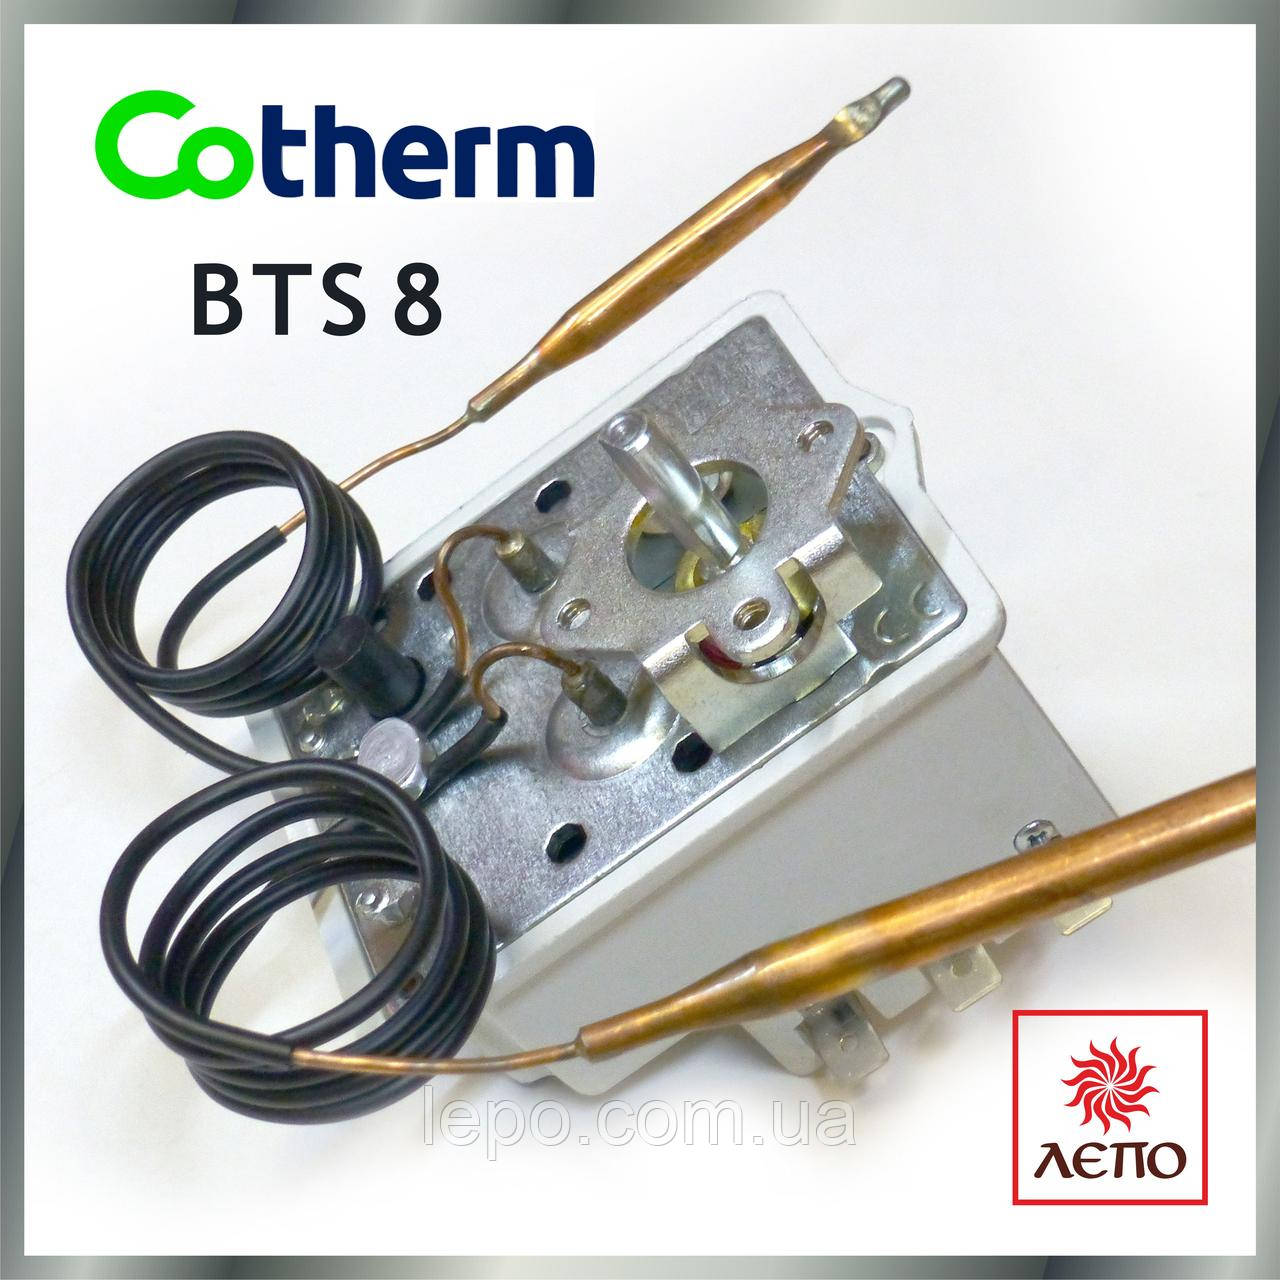 Терморегулятор (термостат) Cotherm BTS8 20А/240V трьохполюсный (3Ф), подвійний (2 капиляра)